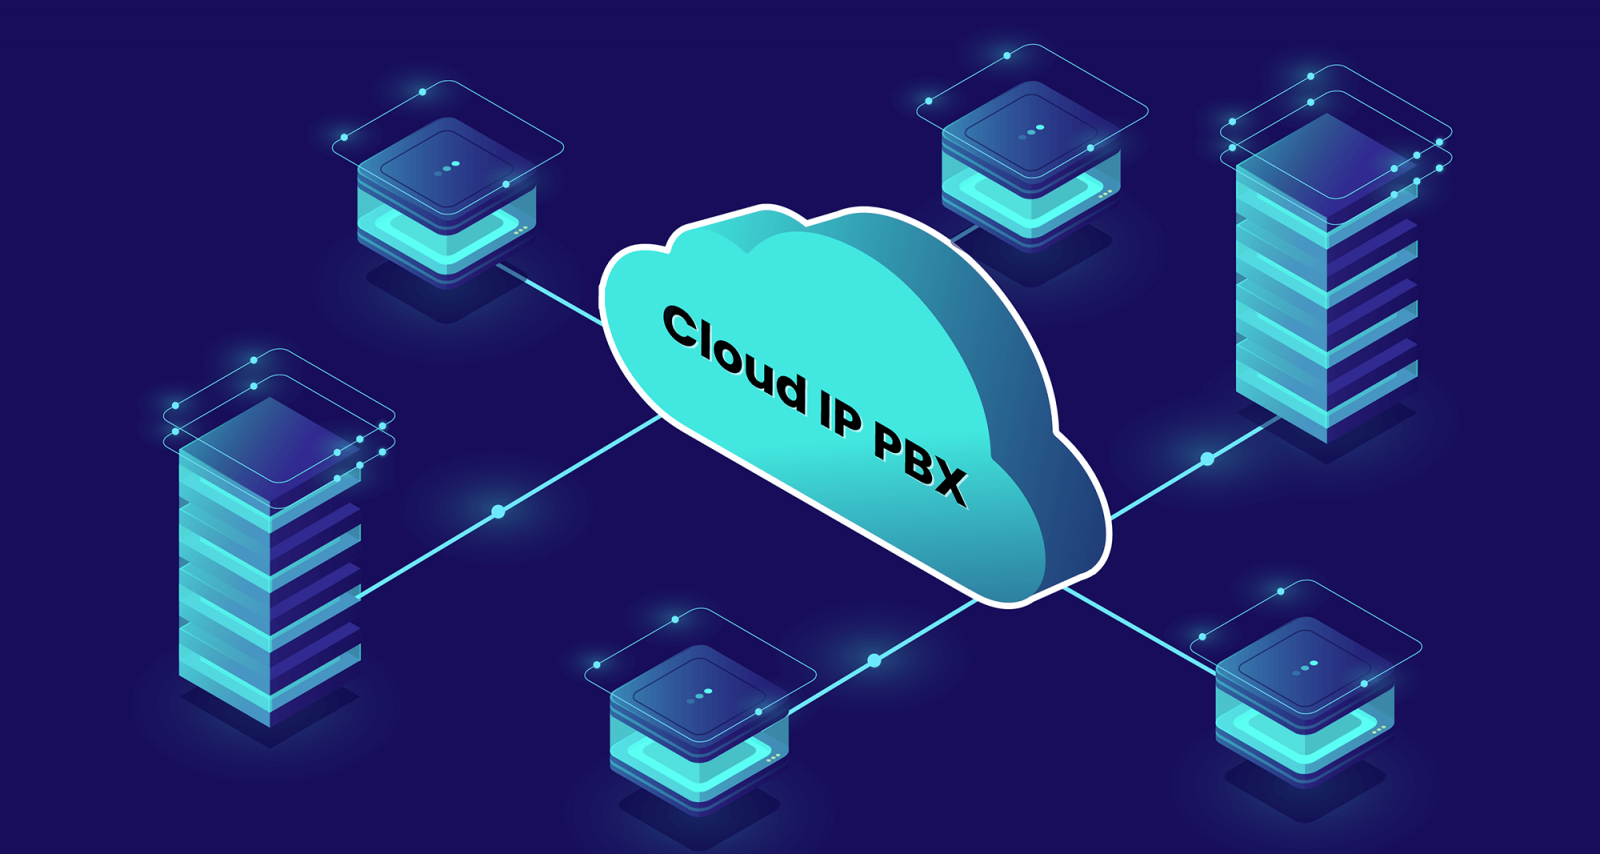 ตลาด Cloud PBX ทั่วโลกกำลังเติบโตอย่างรวดเร็ว